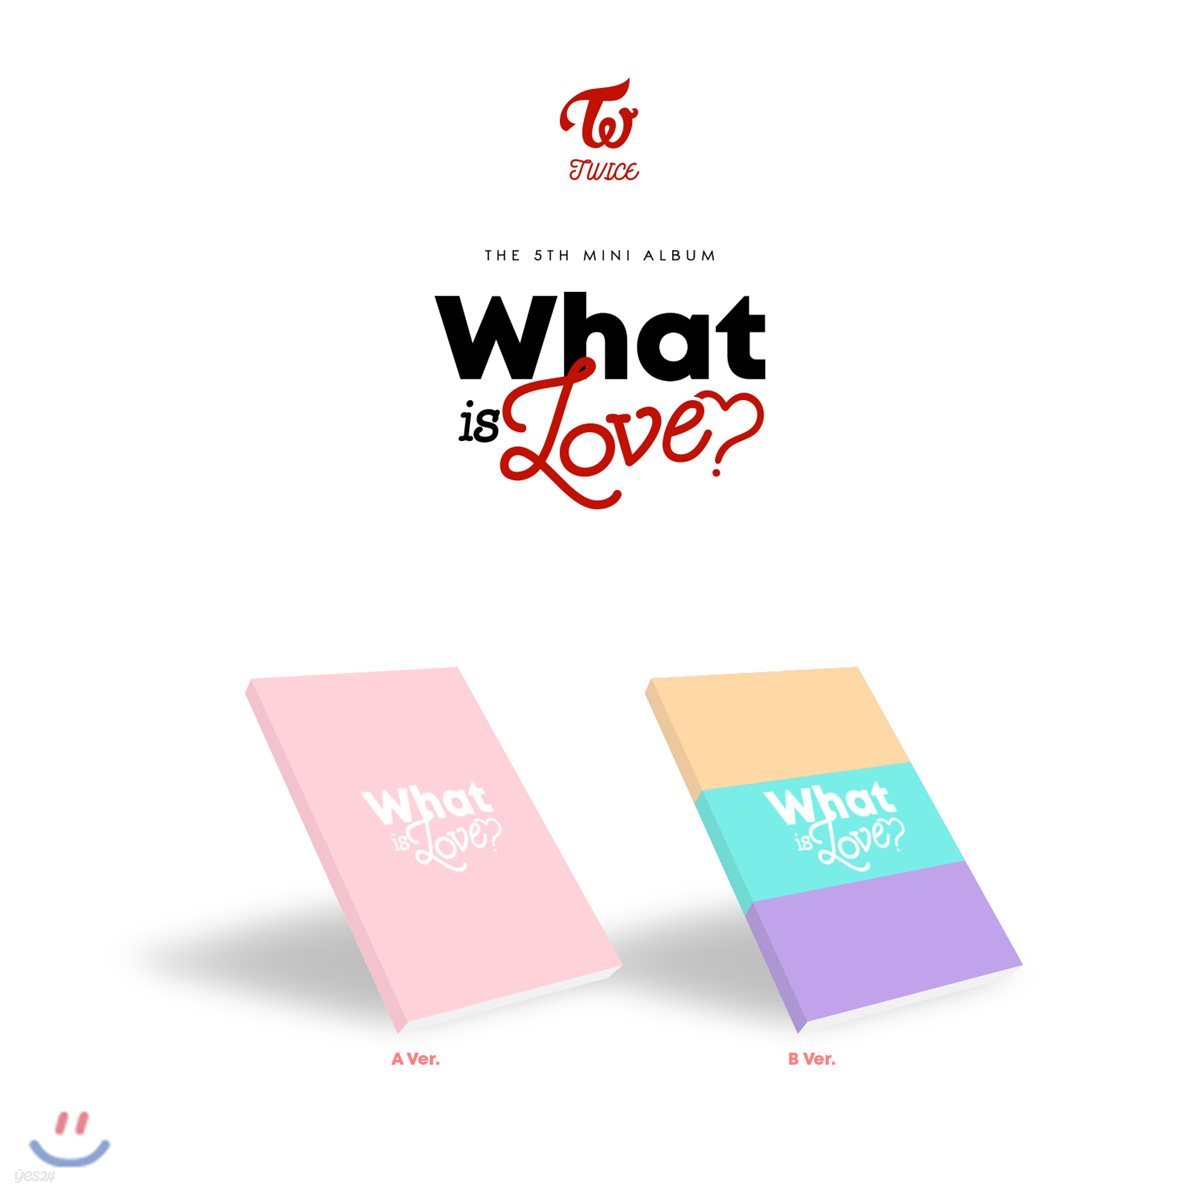 트와이스 (TWICE) - 미니앨범 5집 : What is Love? [A/B버전 랜덤 발송]